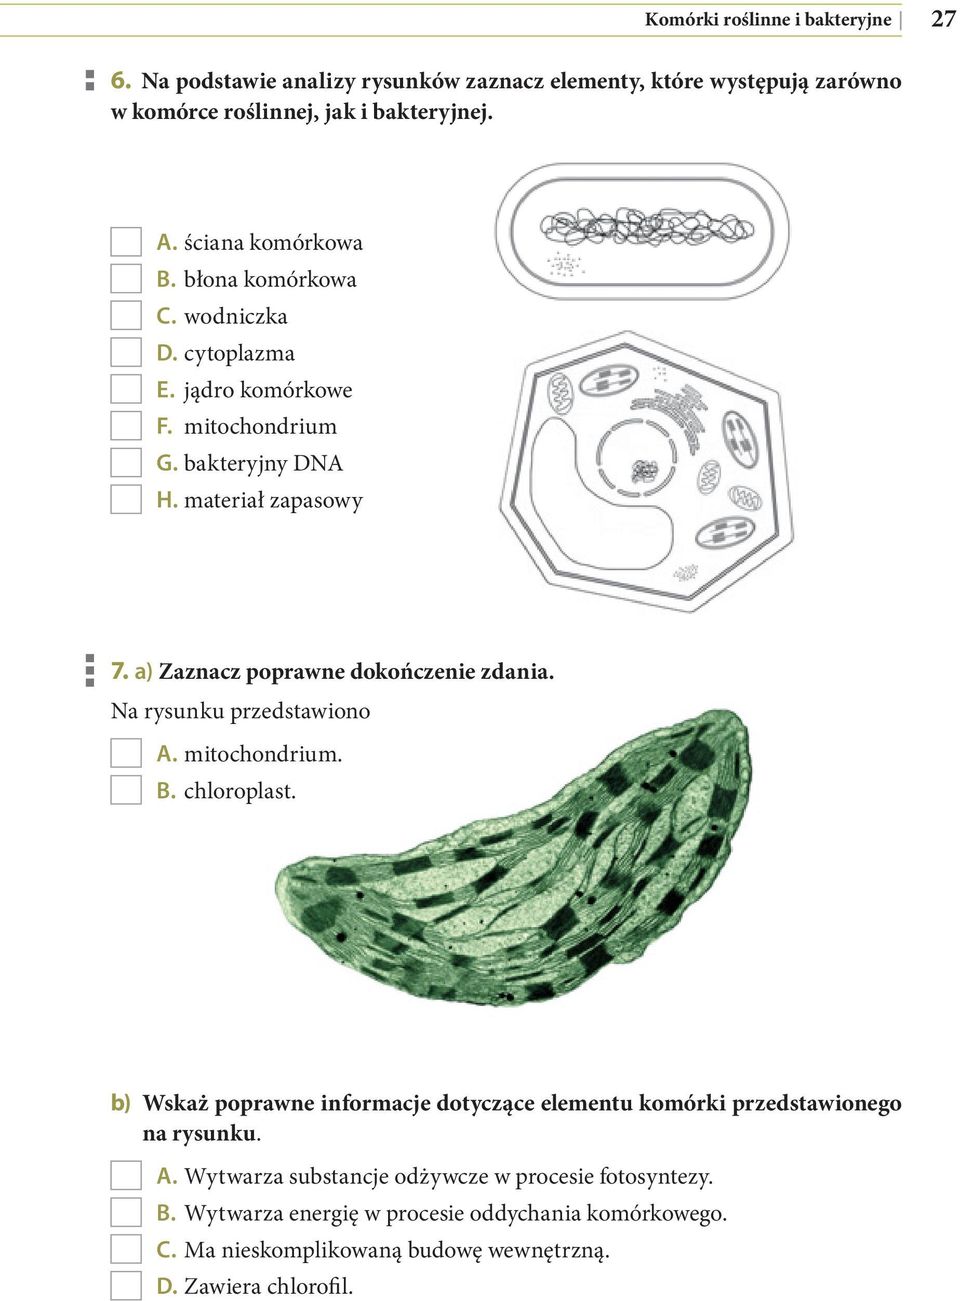 a) Zaznacz poprawne dokończenie zdania. Na rysunku przedstawiono A. mitochondrium. B. chloroplast.